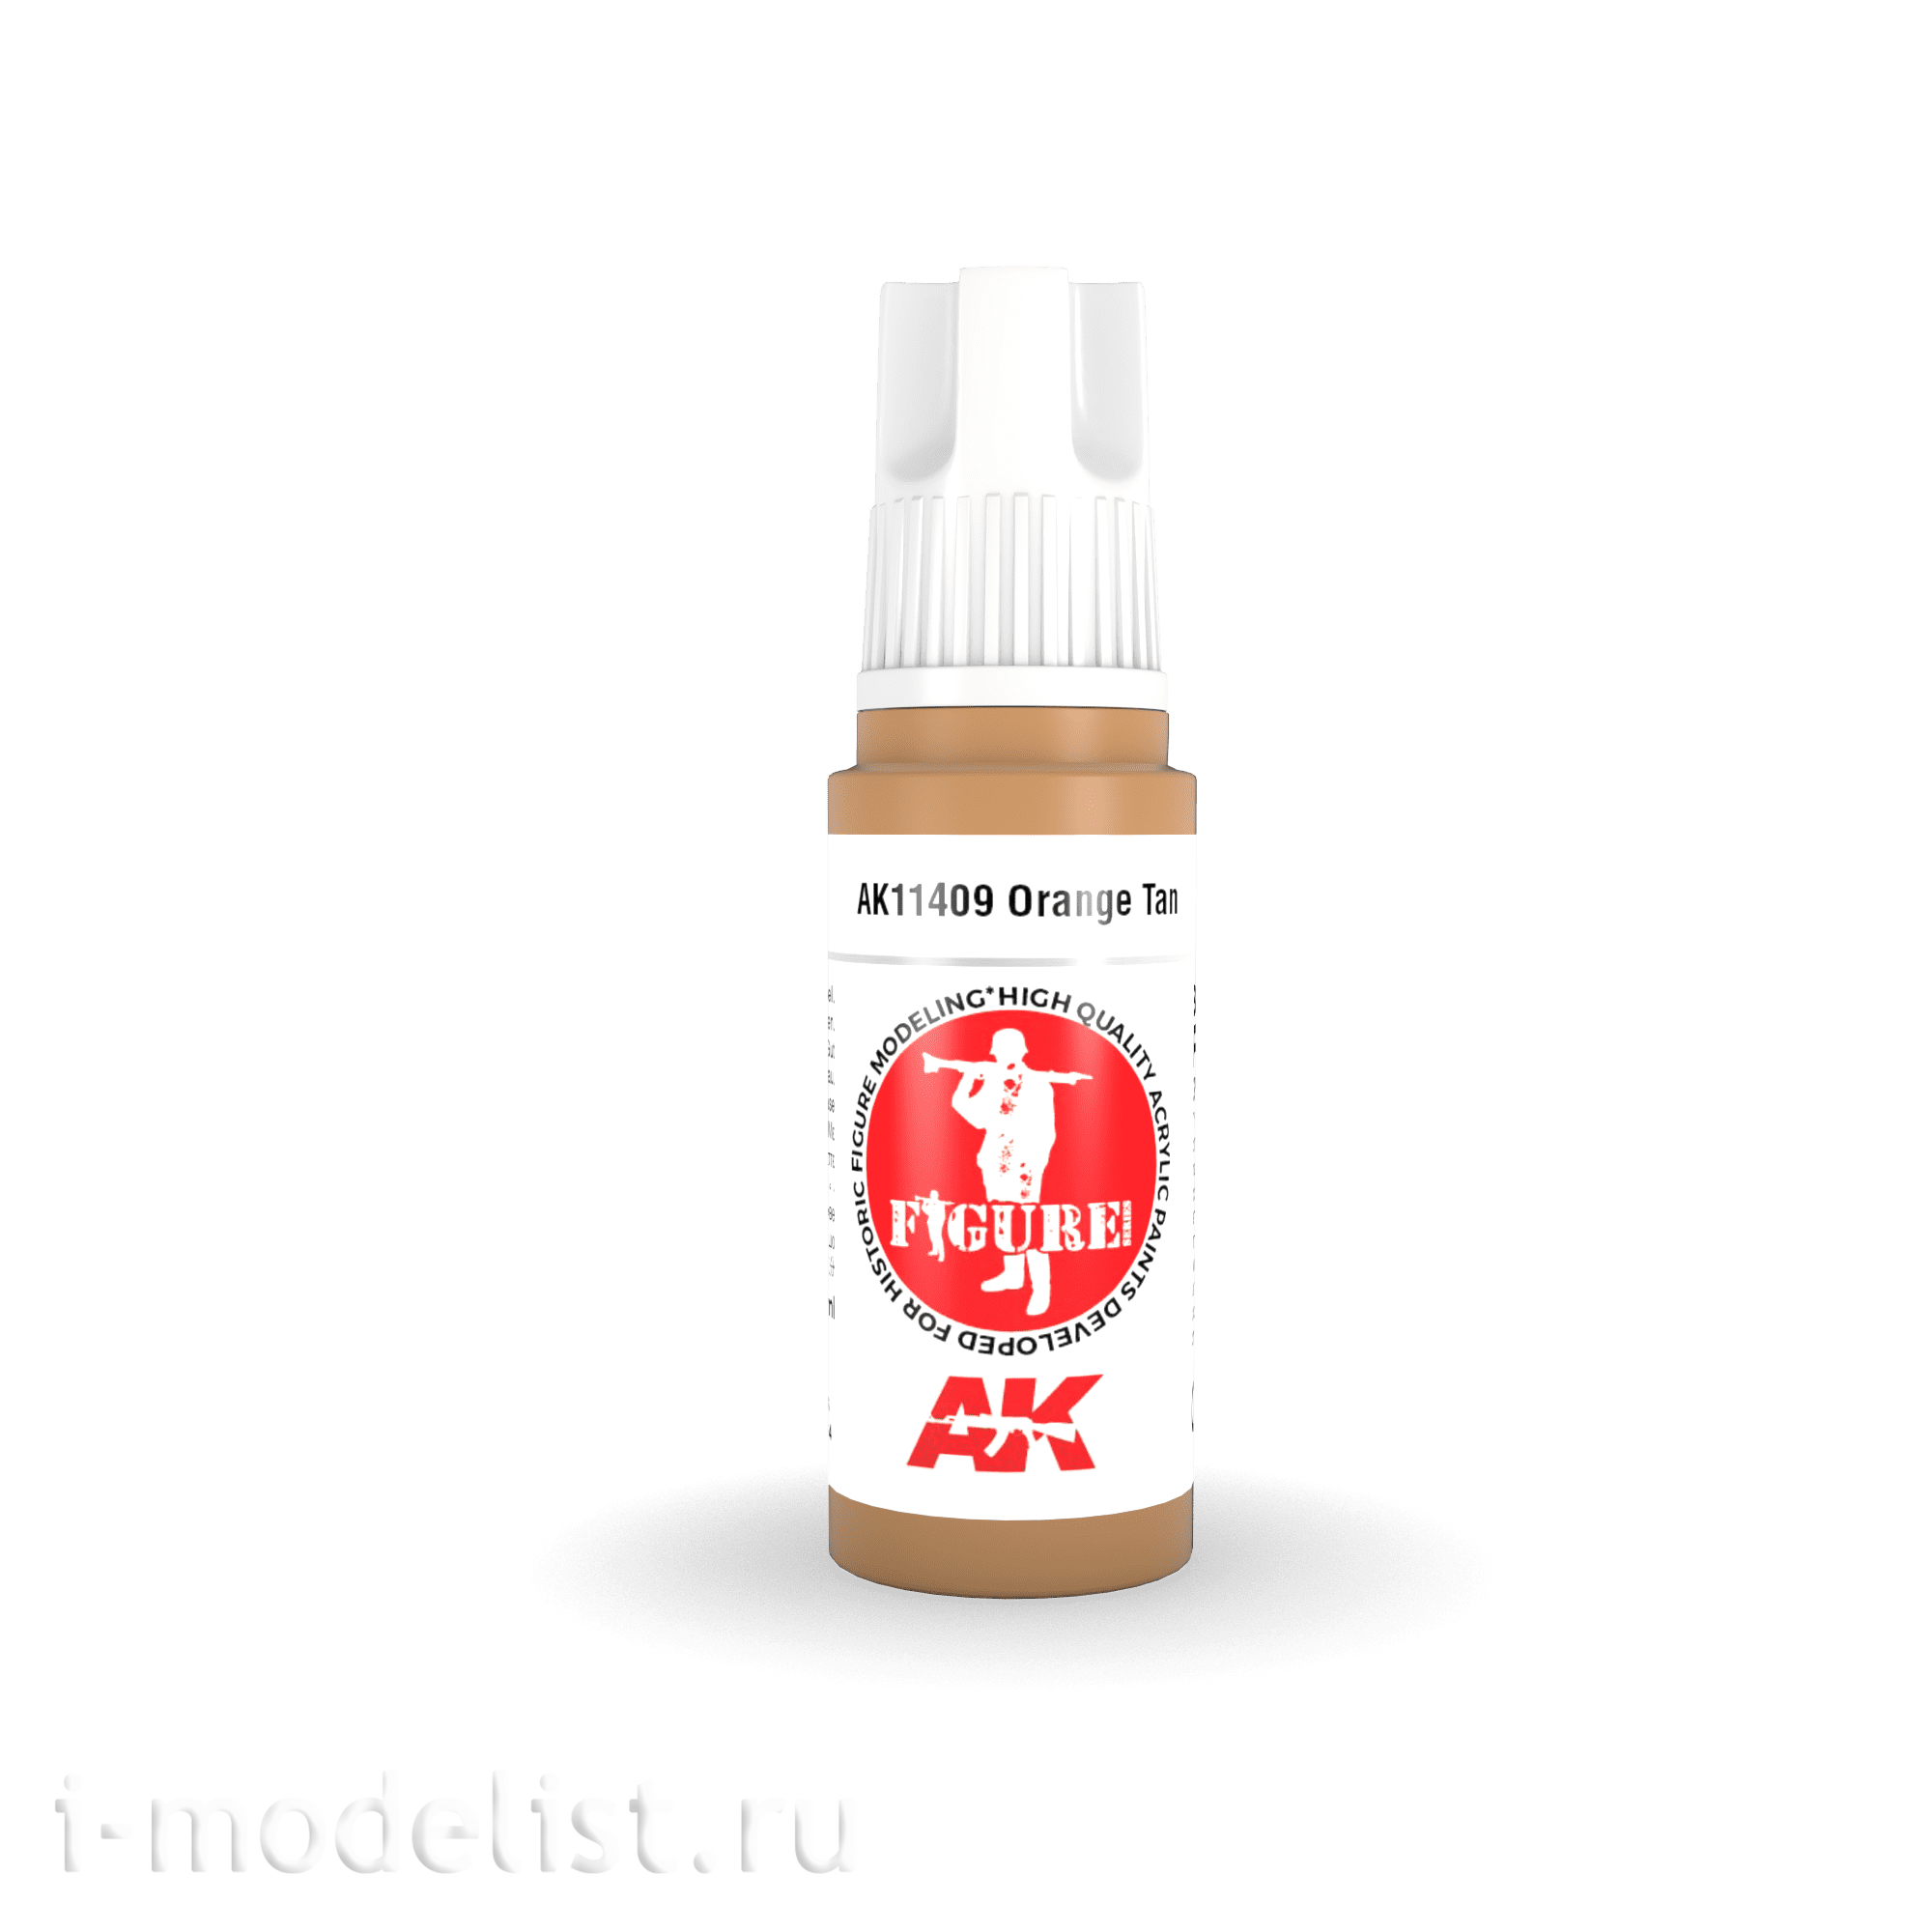 AK11409 AK Interactive Acrylic paint ORANGE TAN-FIGURES (orange tan) 17 ml